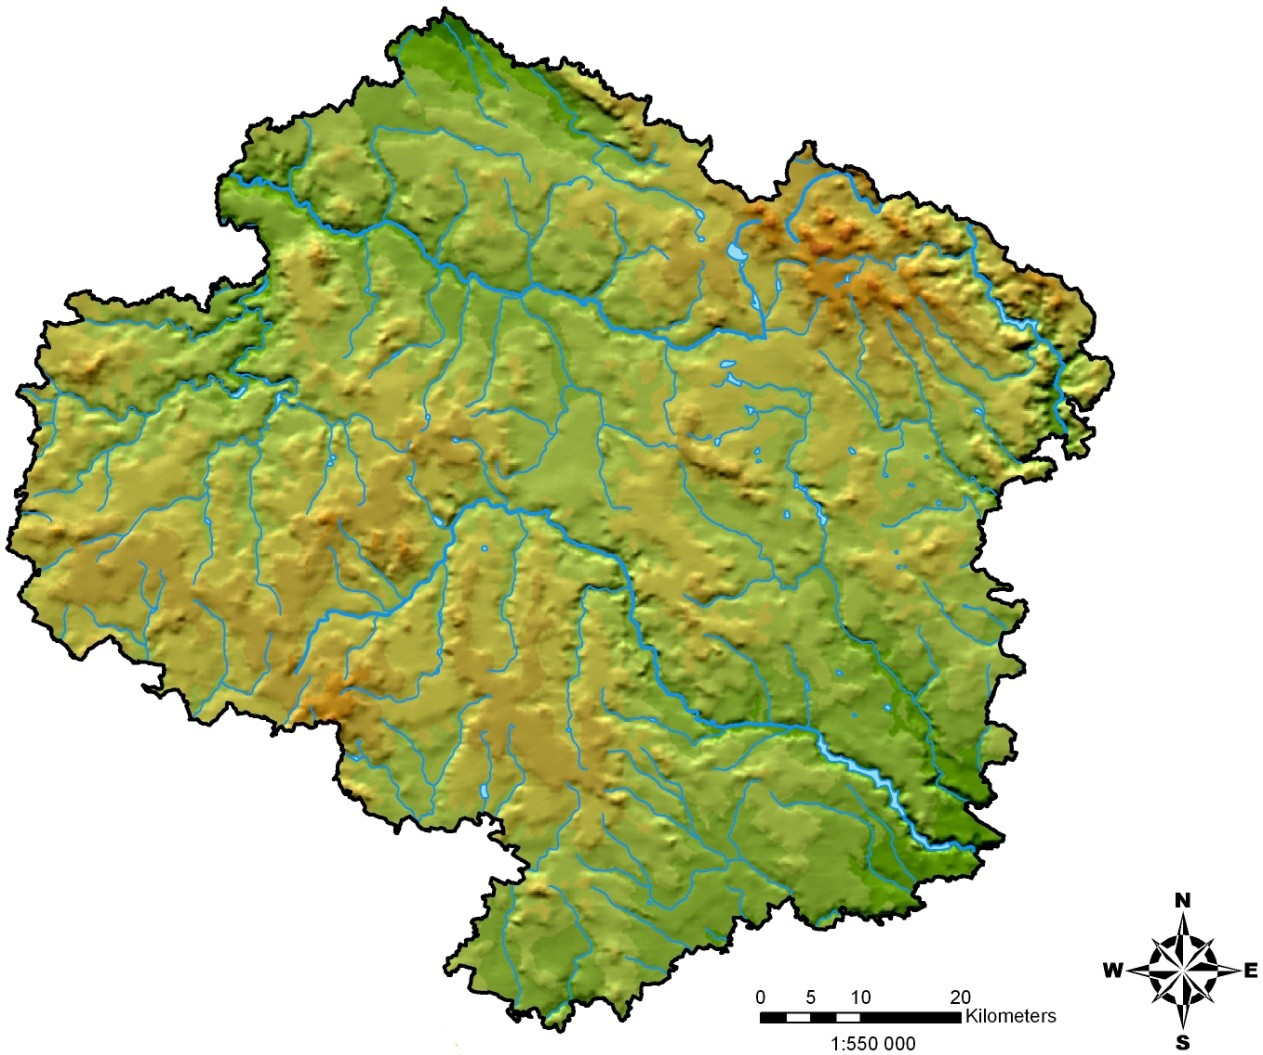 2 Charakteristika území 2.1 Geografické údaje 2.1.1 Kraj Vysočina Celé území Kraje Vysočina leží v oblasti Českomoravské vrchoviny.